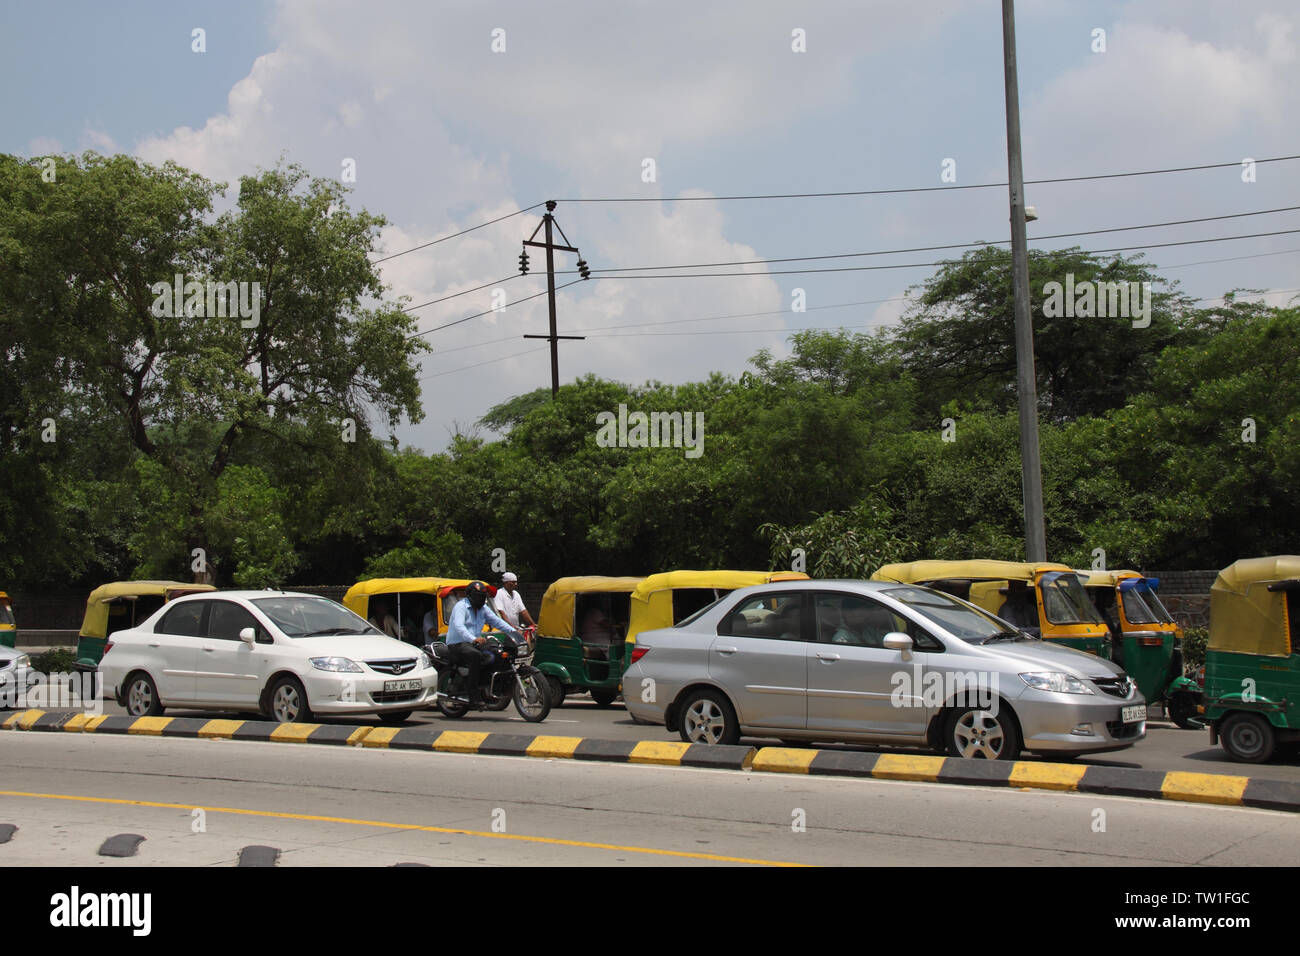 Le trafic sur la route, New Delhi, Inde Banque D'Images